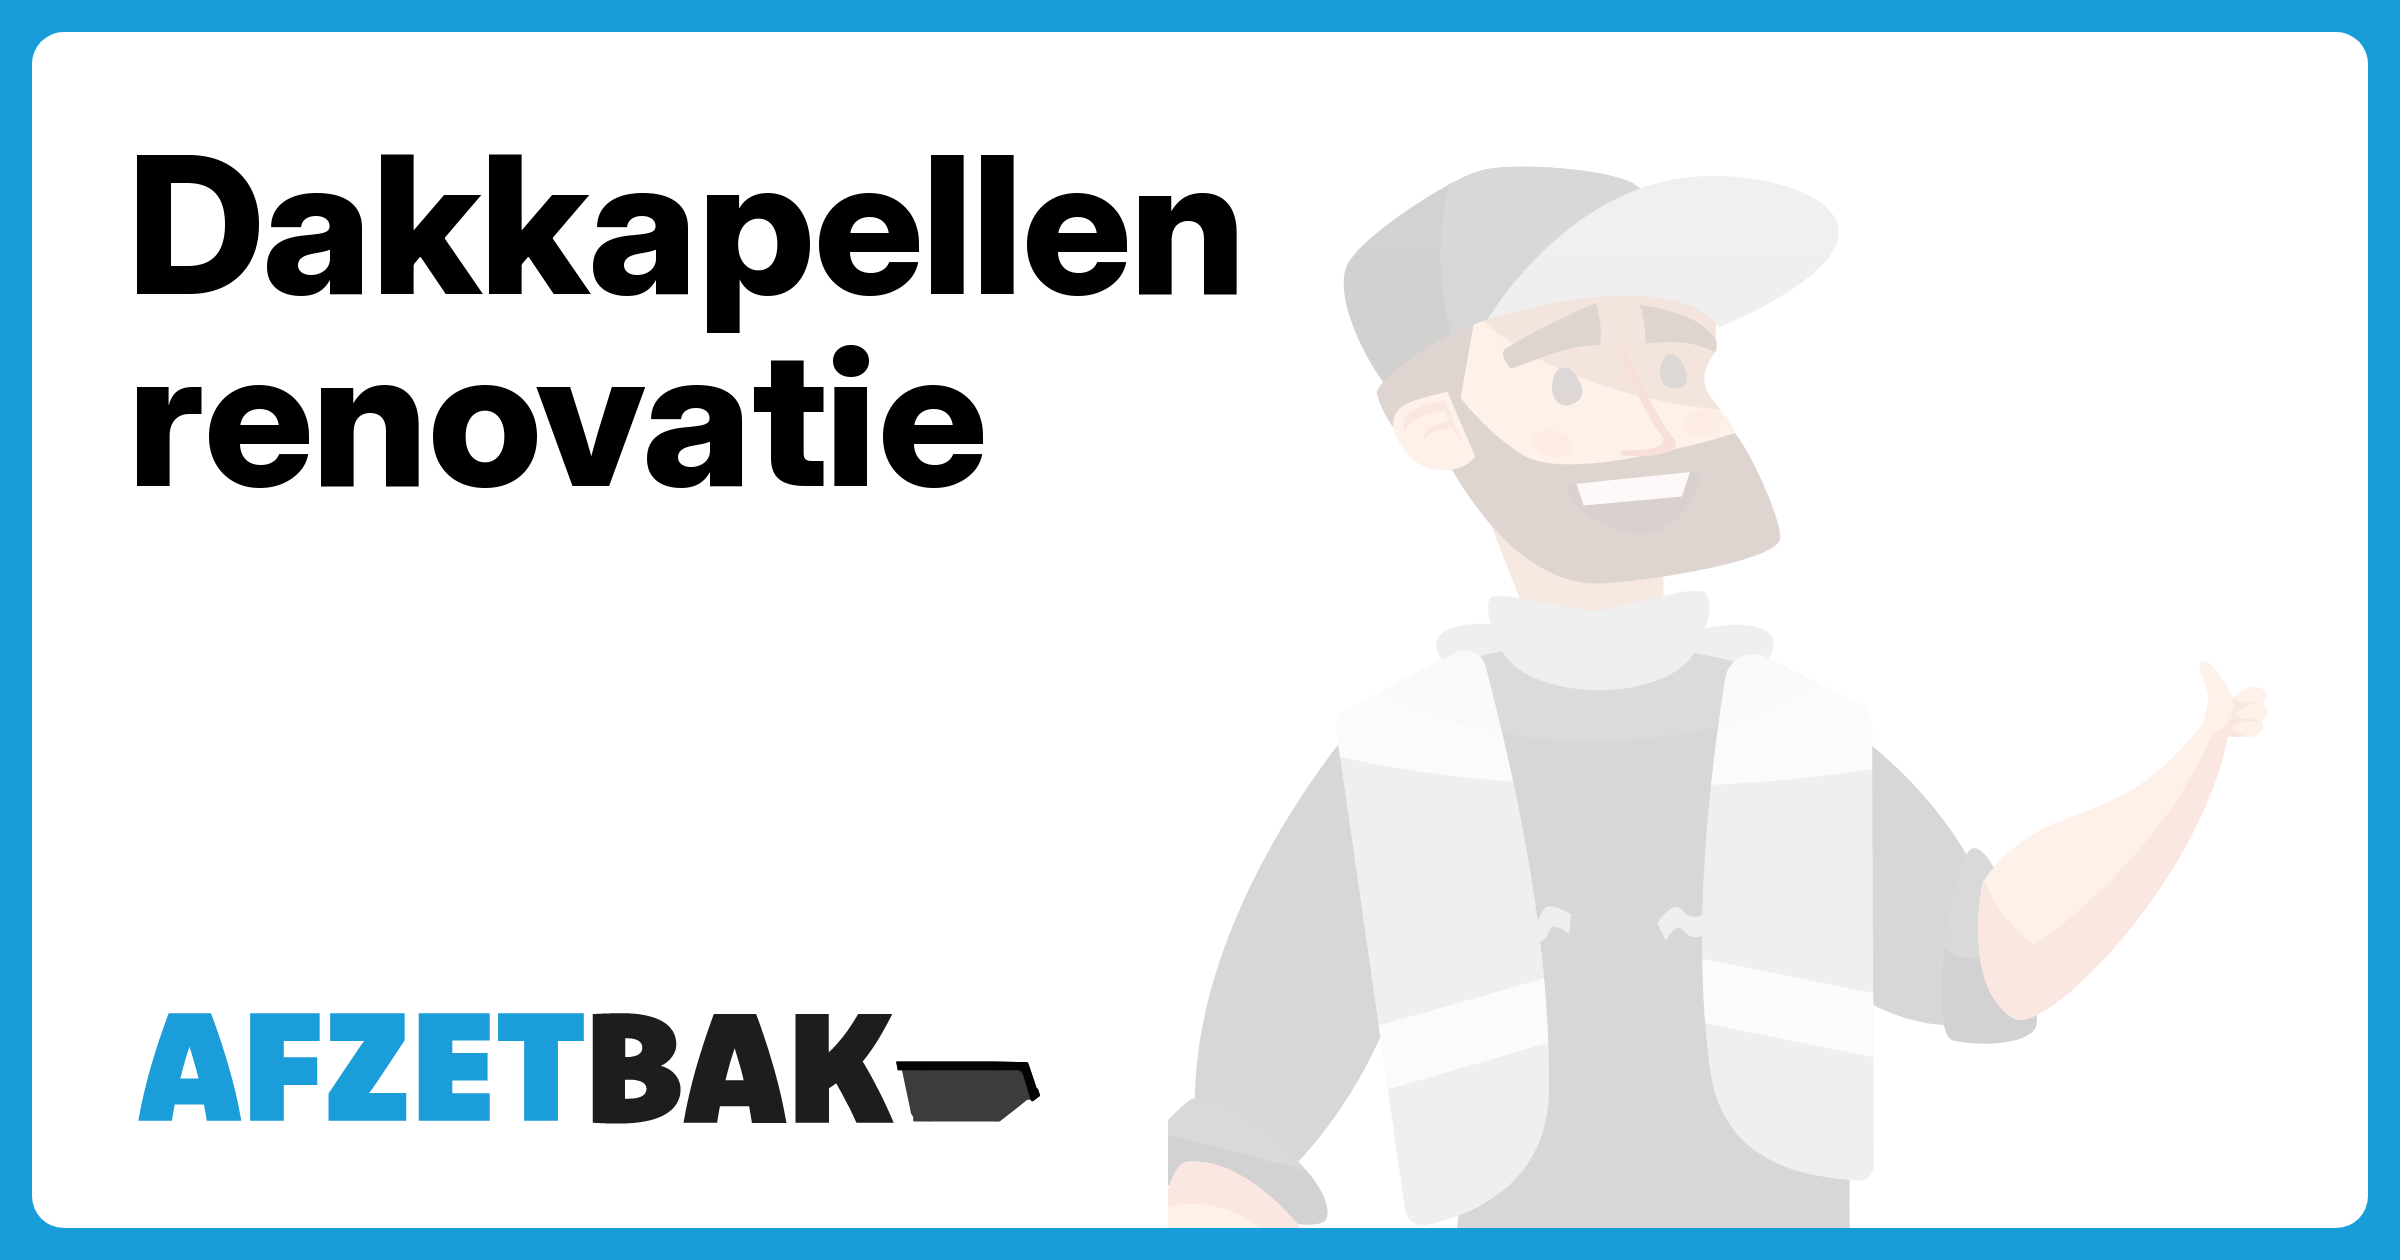 Dakkapellen renovatie - Afzetbak.nl